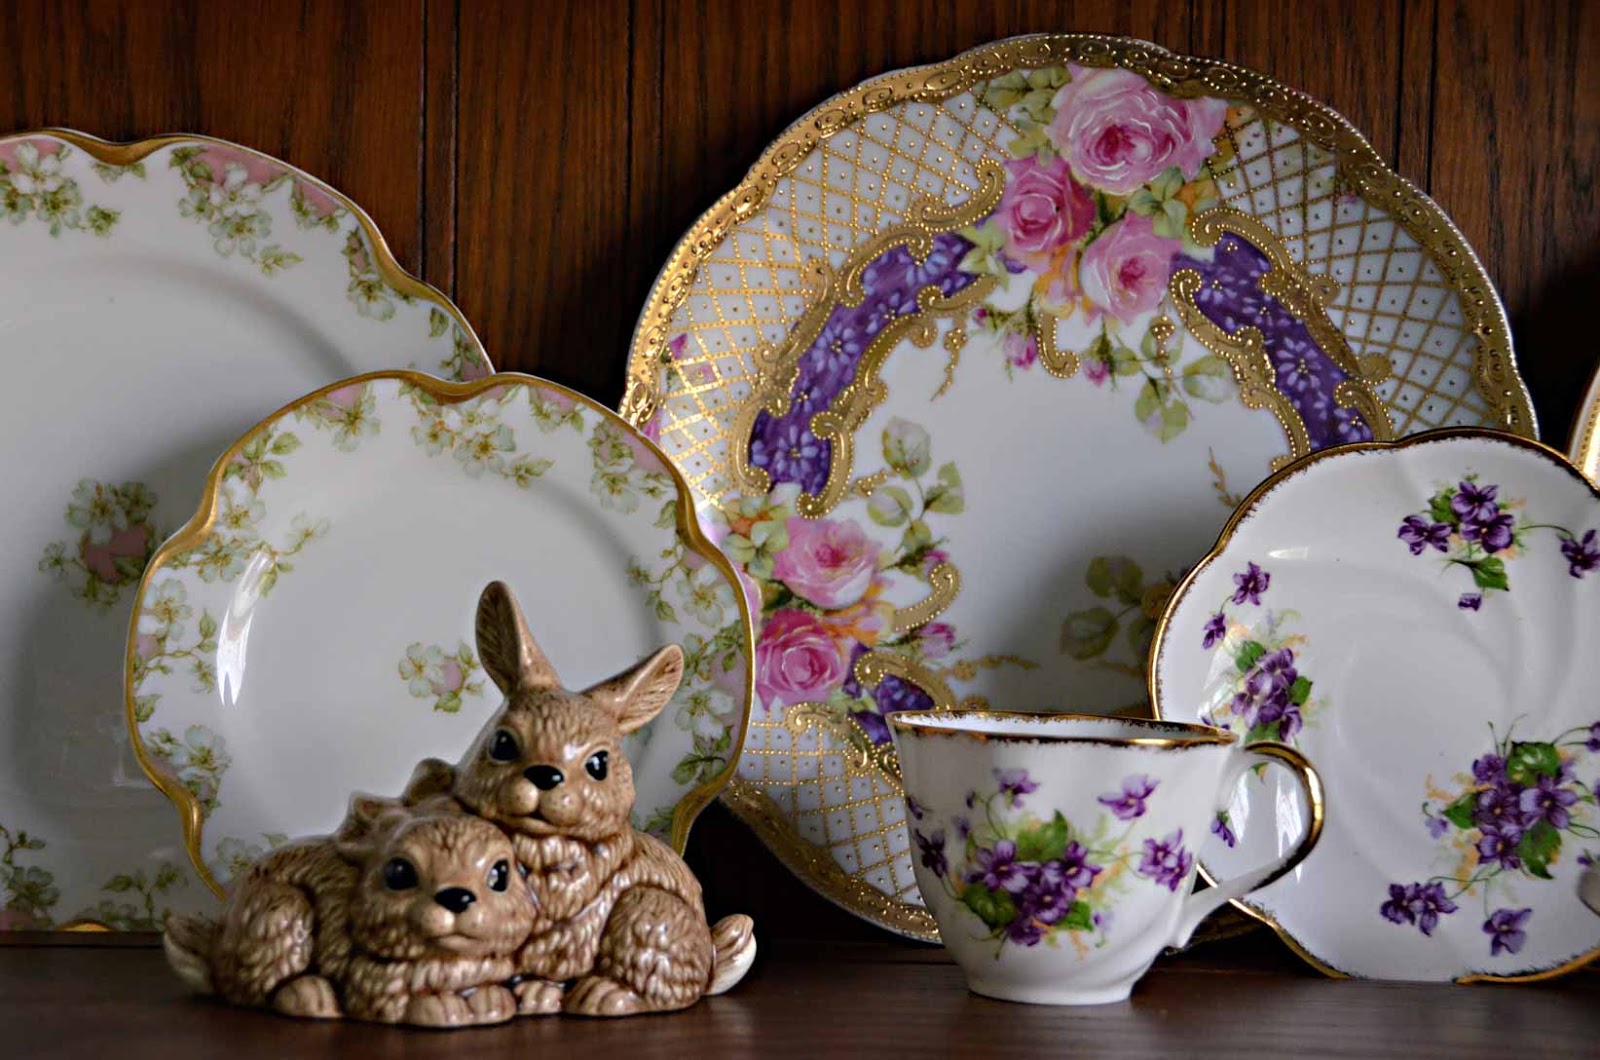 Spring vintage china porcelain plates